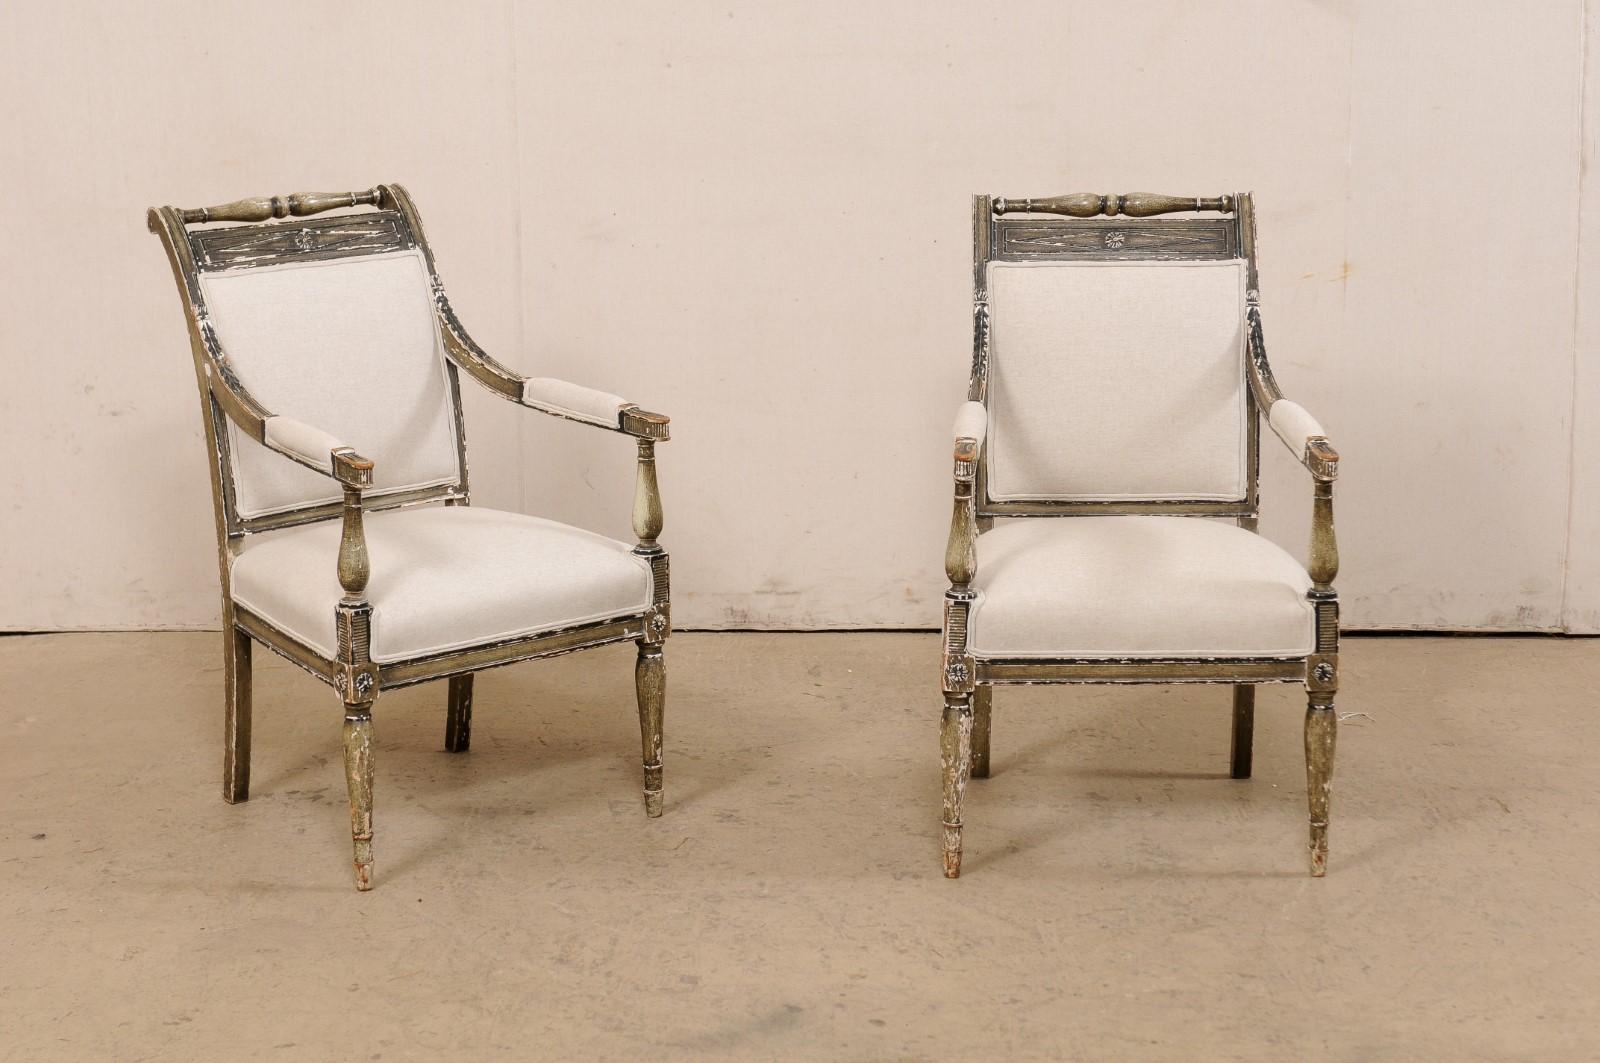 Ein französisches Paar Sessel im Empire-Stil, original lackiert, aus dem 19. Jahrhundert. Diese antiken Fauteuils aus Frankreich verfügen jeweils über schön gewölbte Rückenlehnen, rechteckig in Form mit gepolsterten Rücken-Center innerhalb von Holz